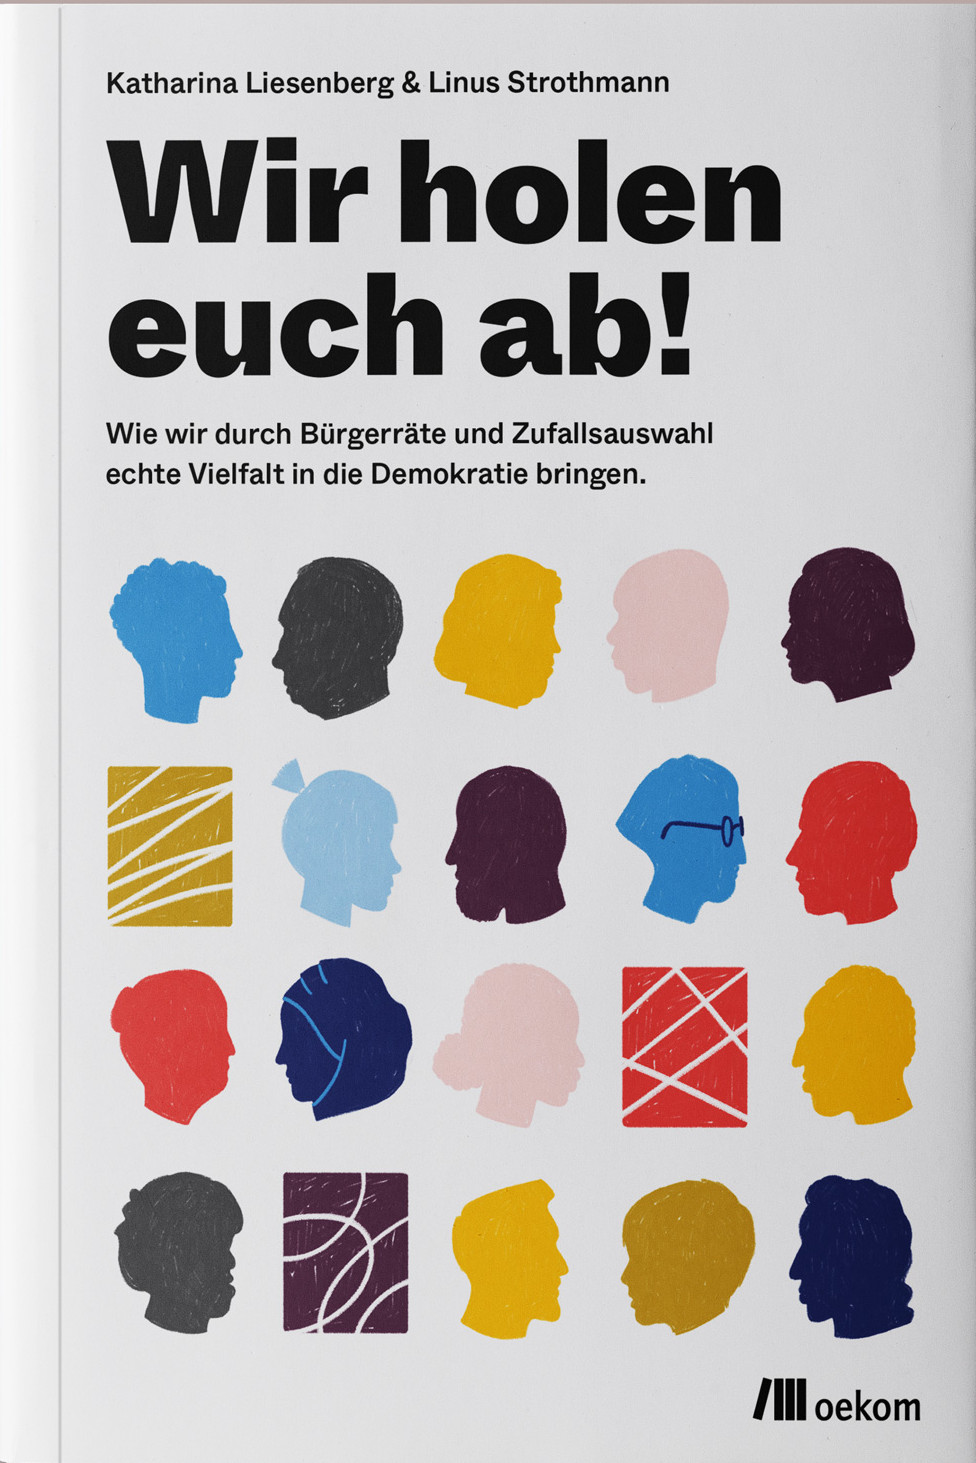 Buchcover von "Wir holen euch ab!" von Liesenberg und Strothmann.